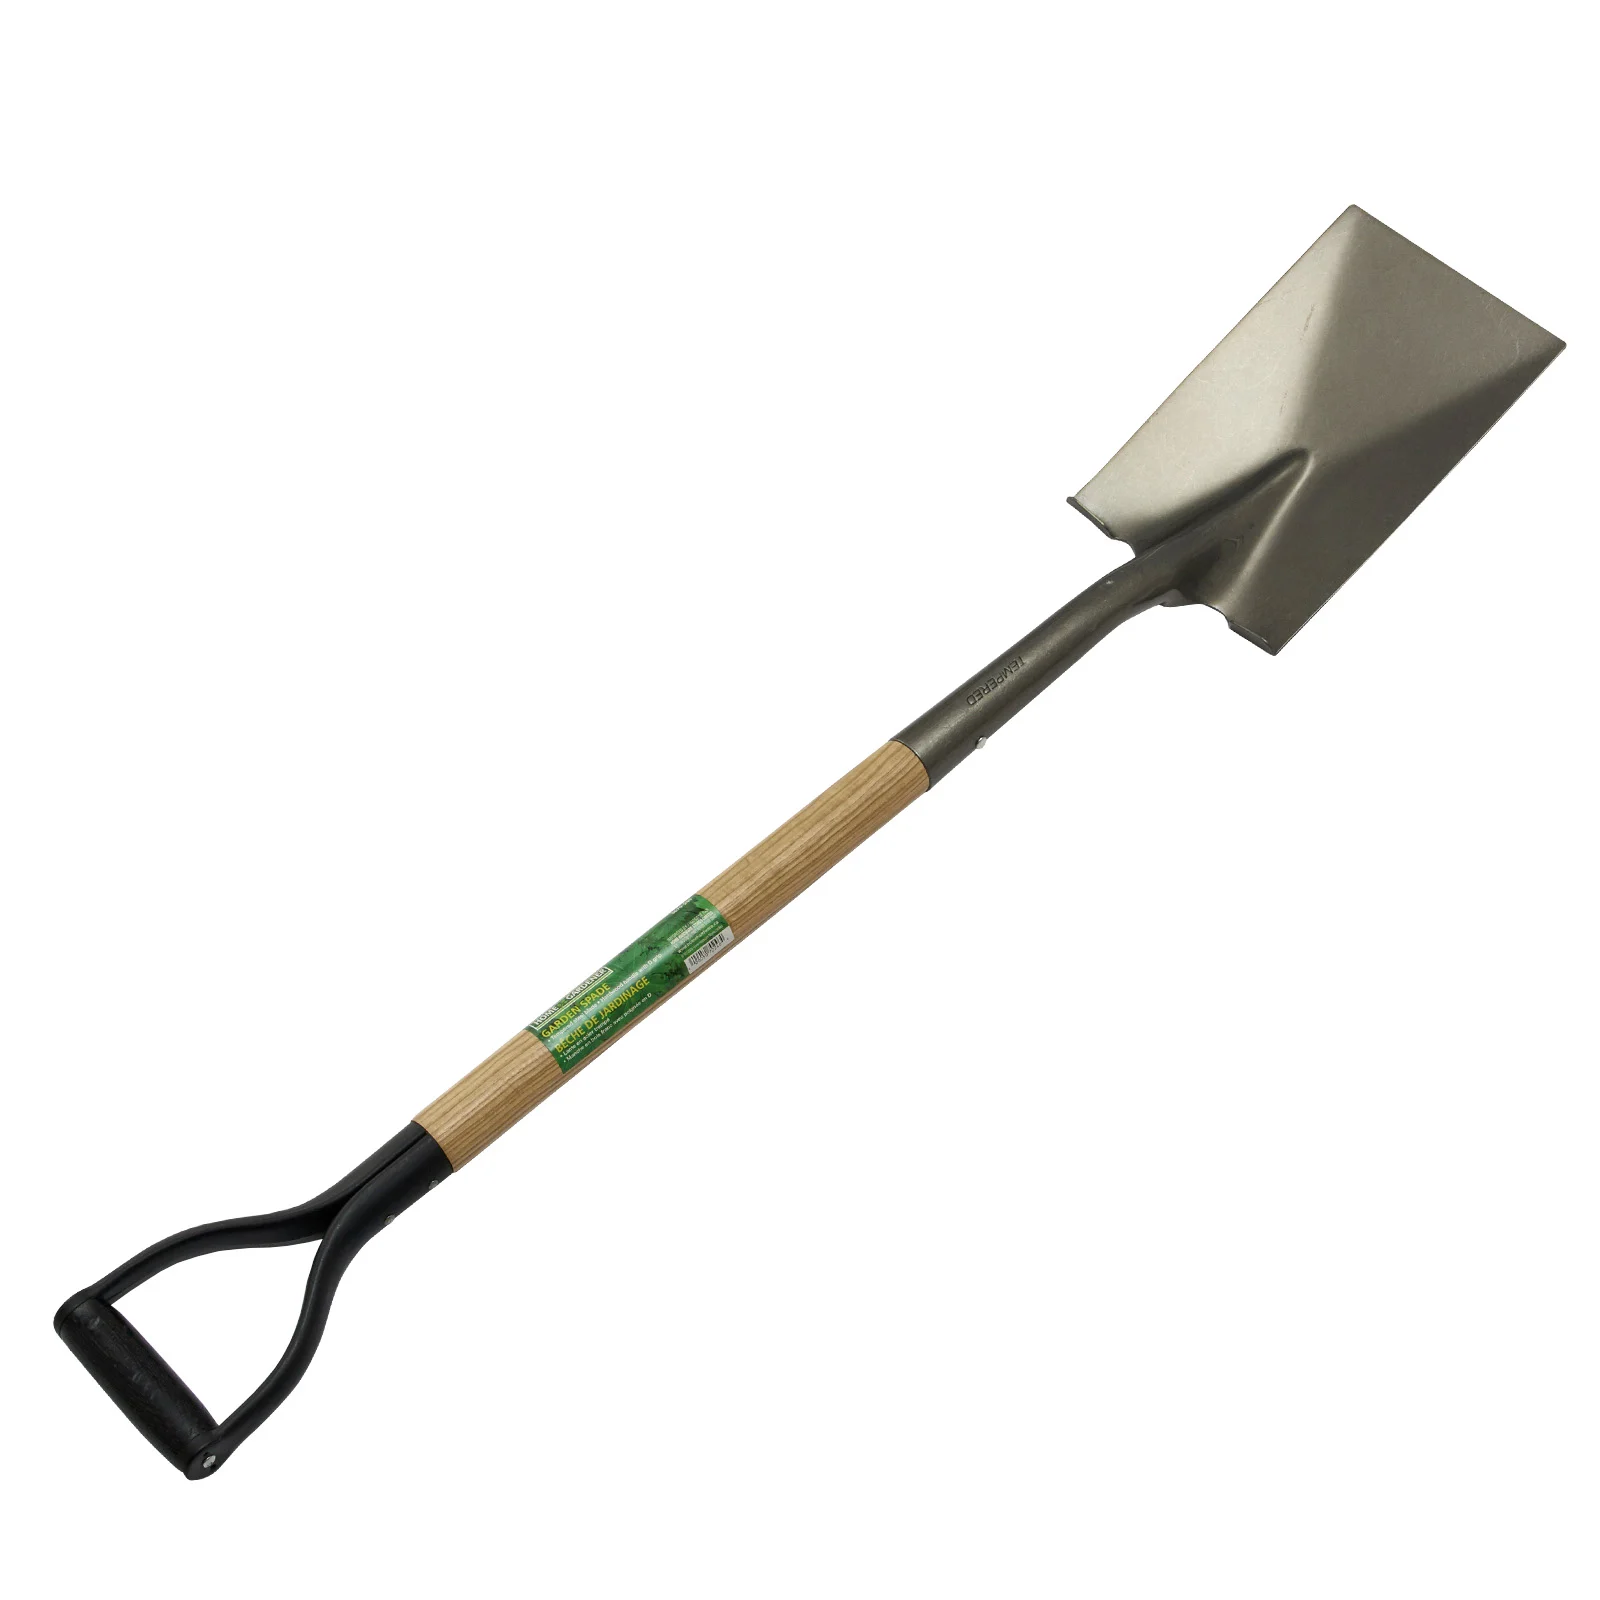 A shovels 